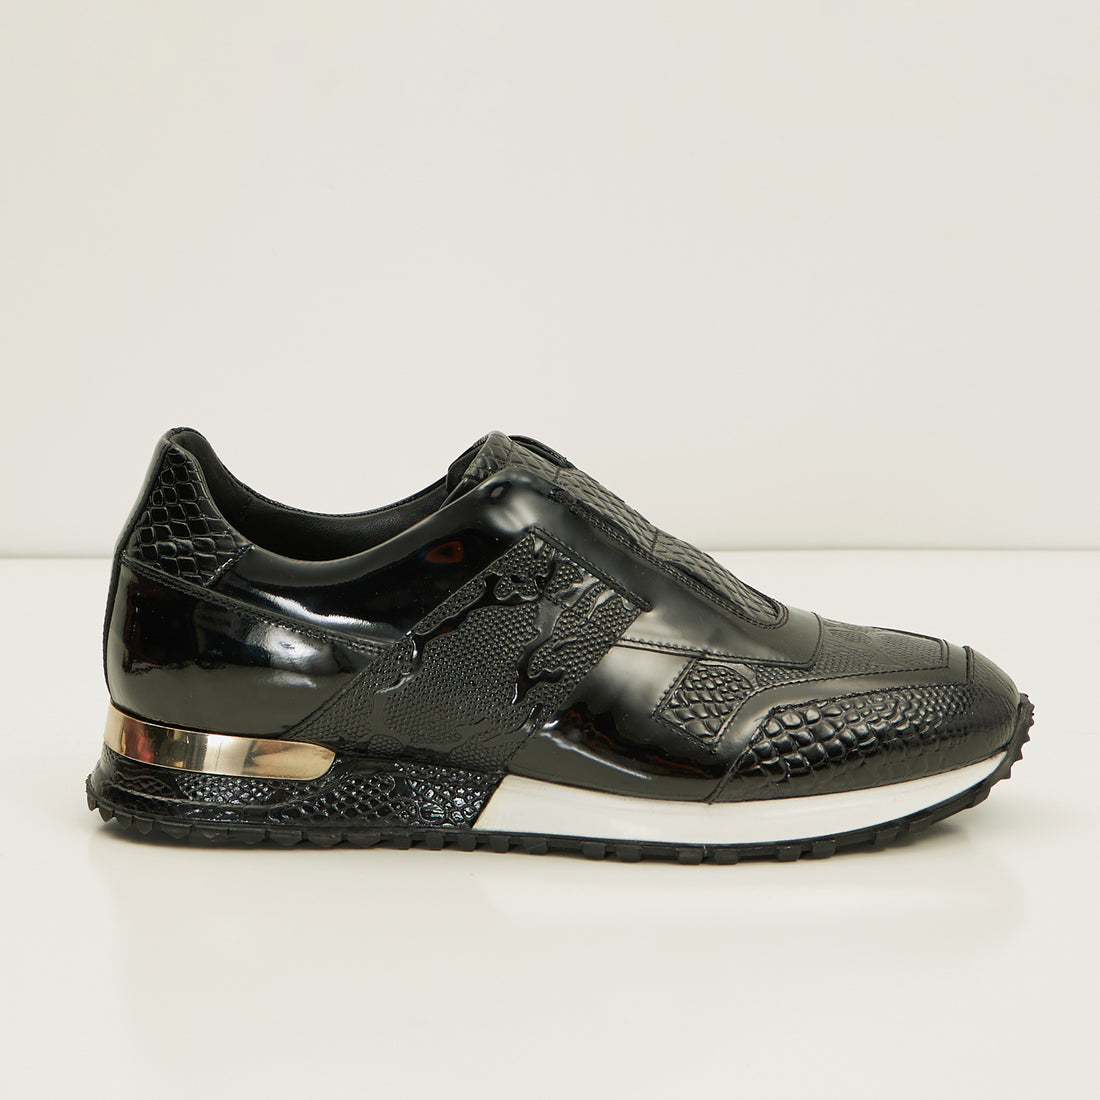 Leather Embossed Snakeskin Sneakers - Black Black